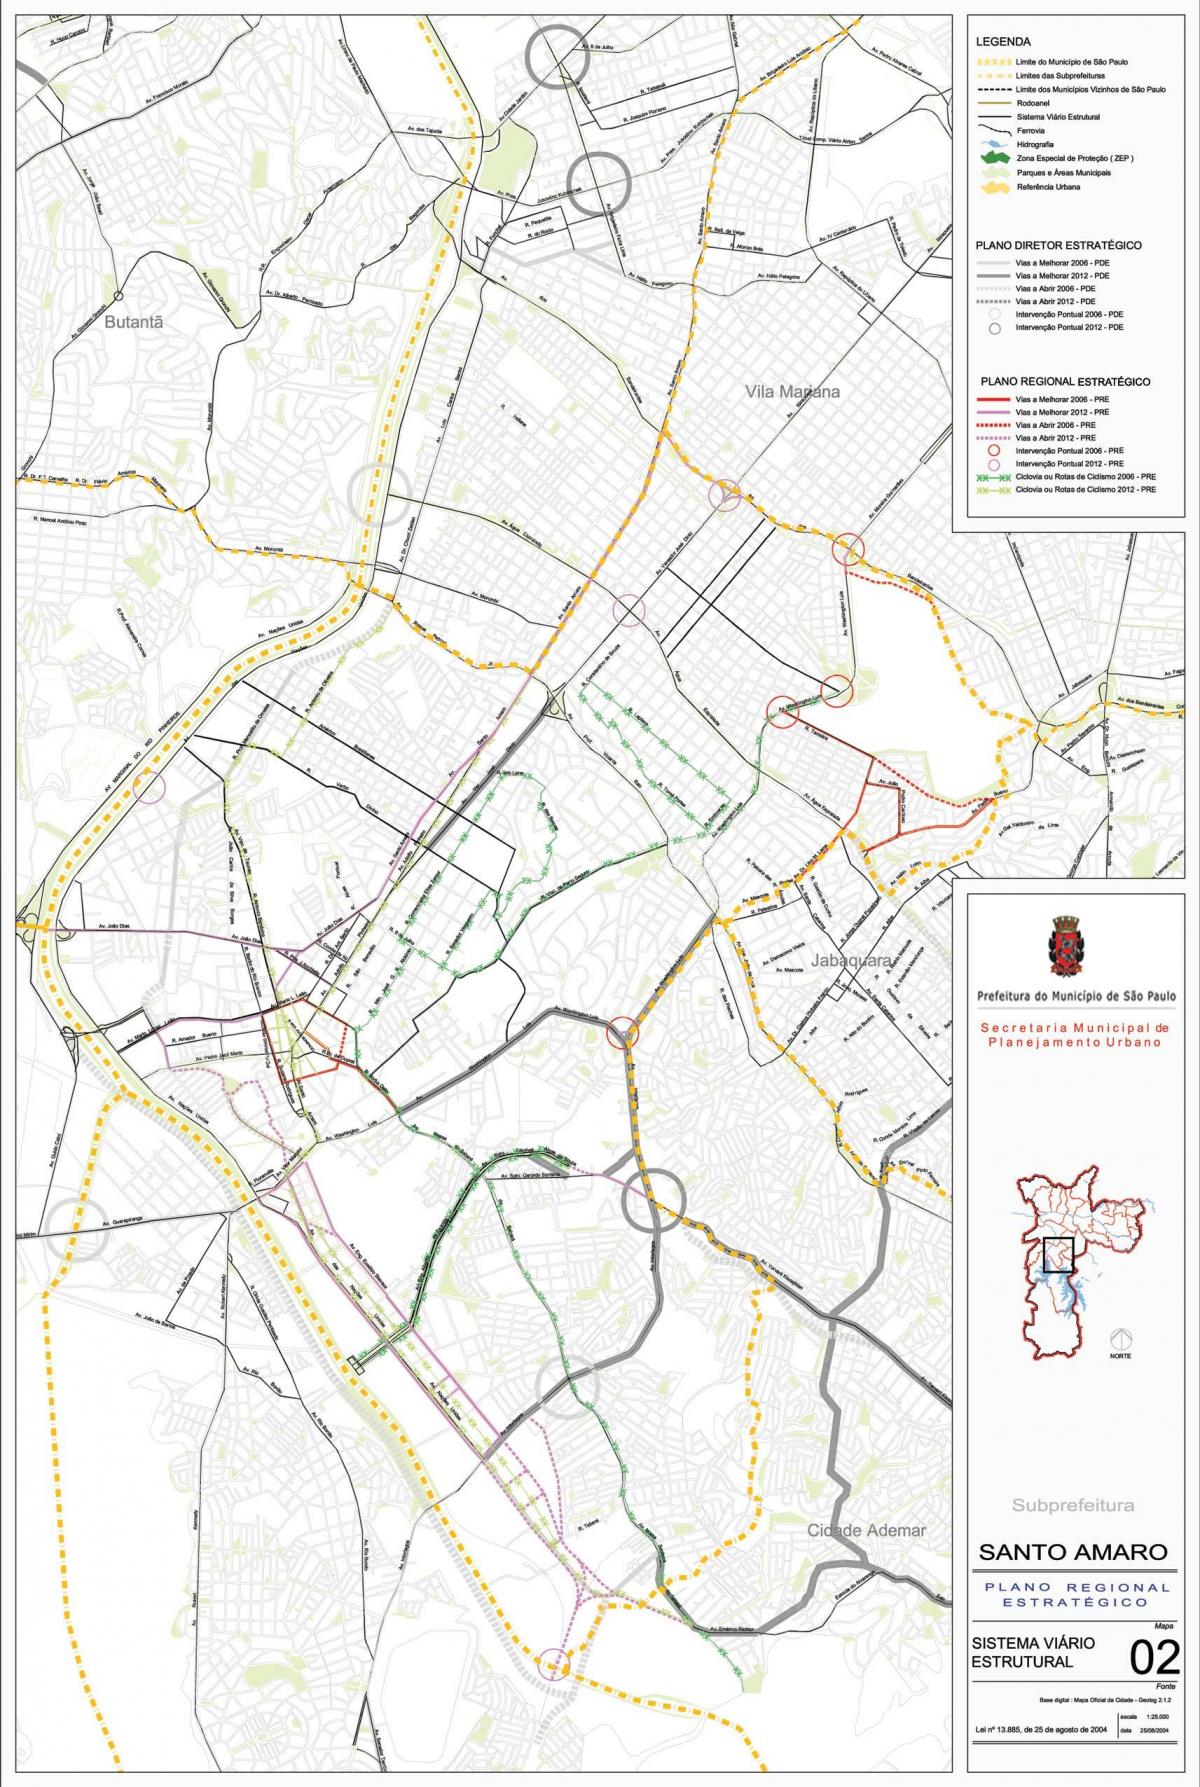 Քարտեզ Սանտո-Амару Սան Պաուլո - ճանապարհների